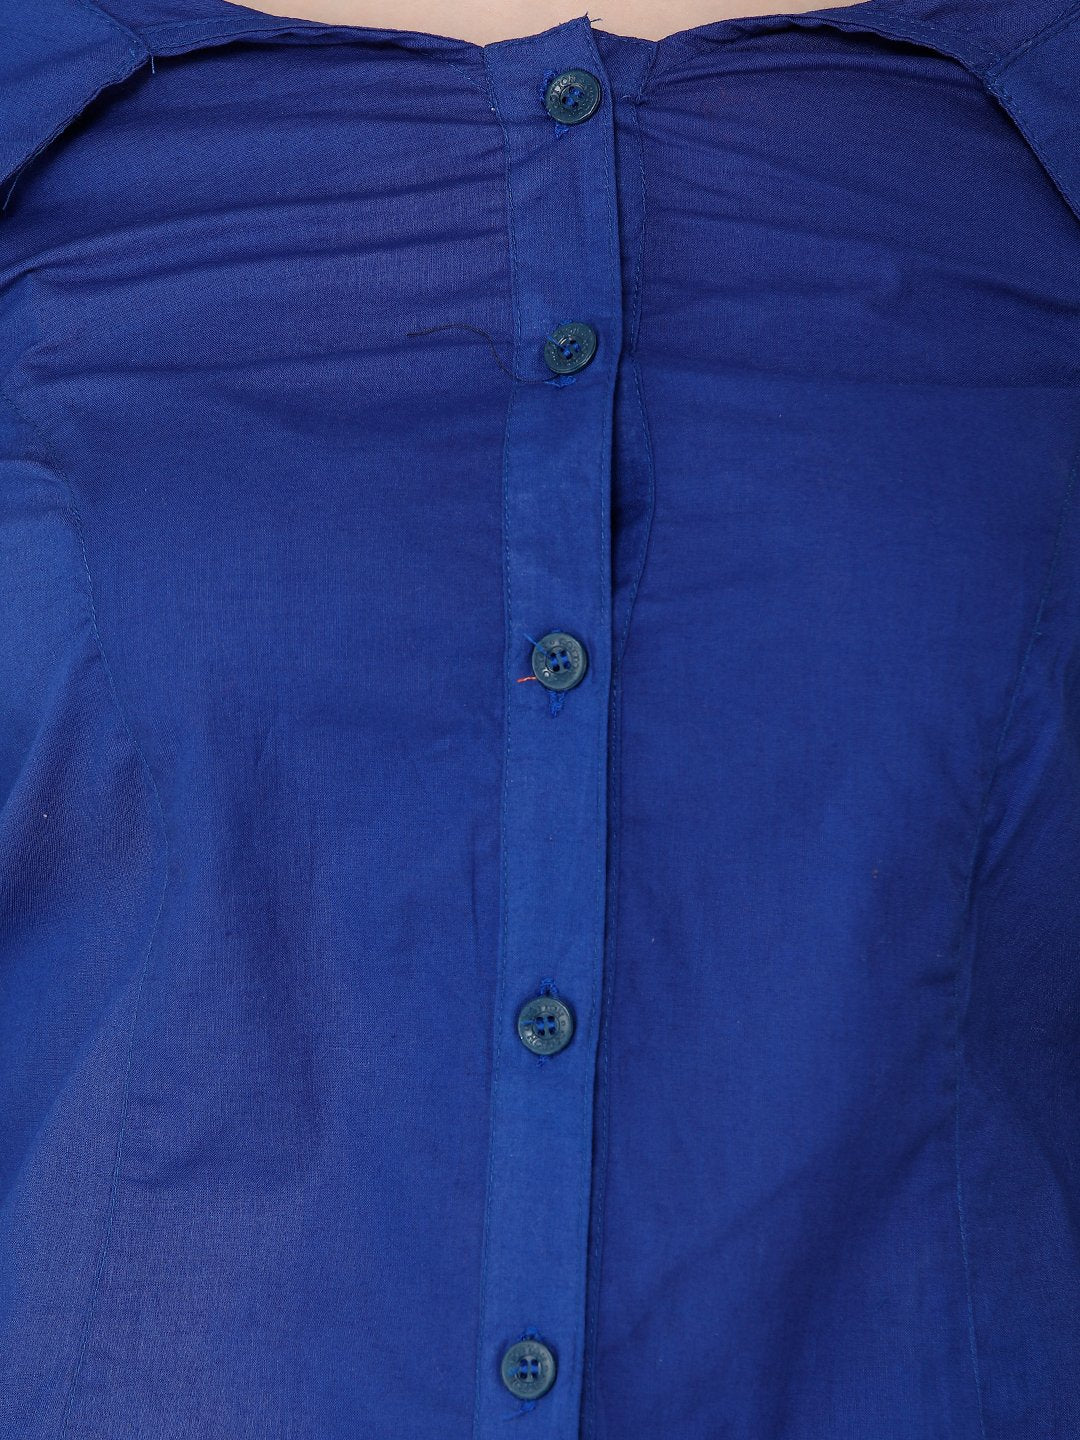 Solid Royal Blue Shirt